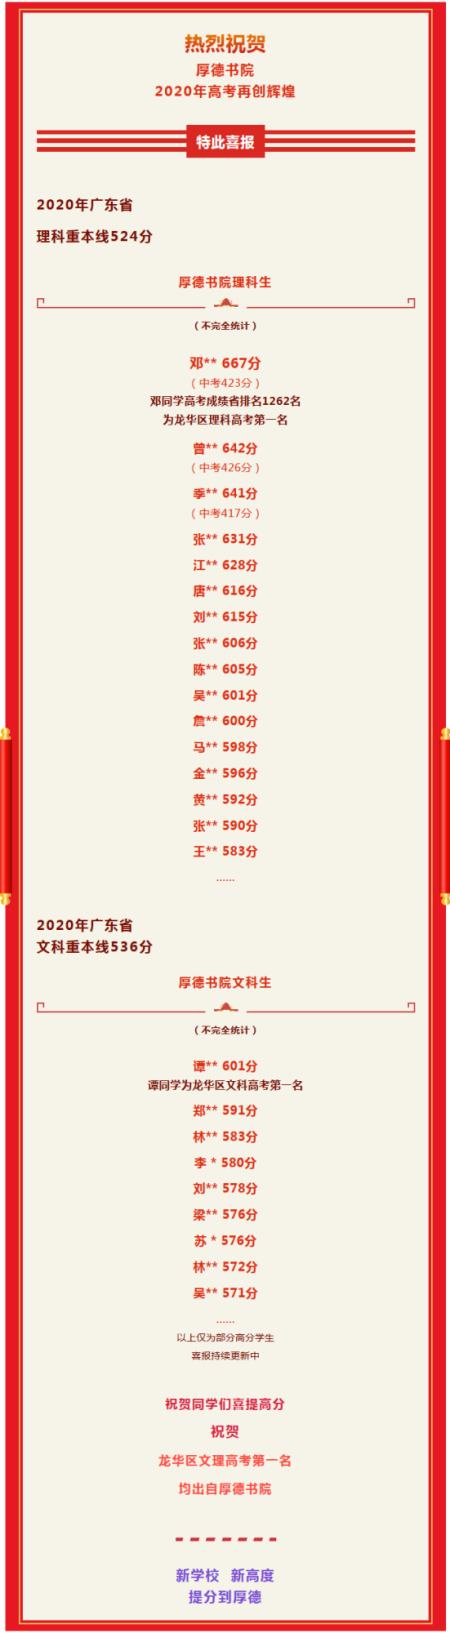 深圳市厚德书院2020年高考成绩一览